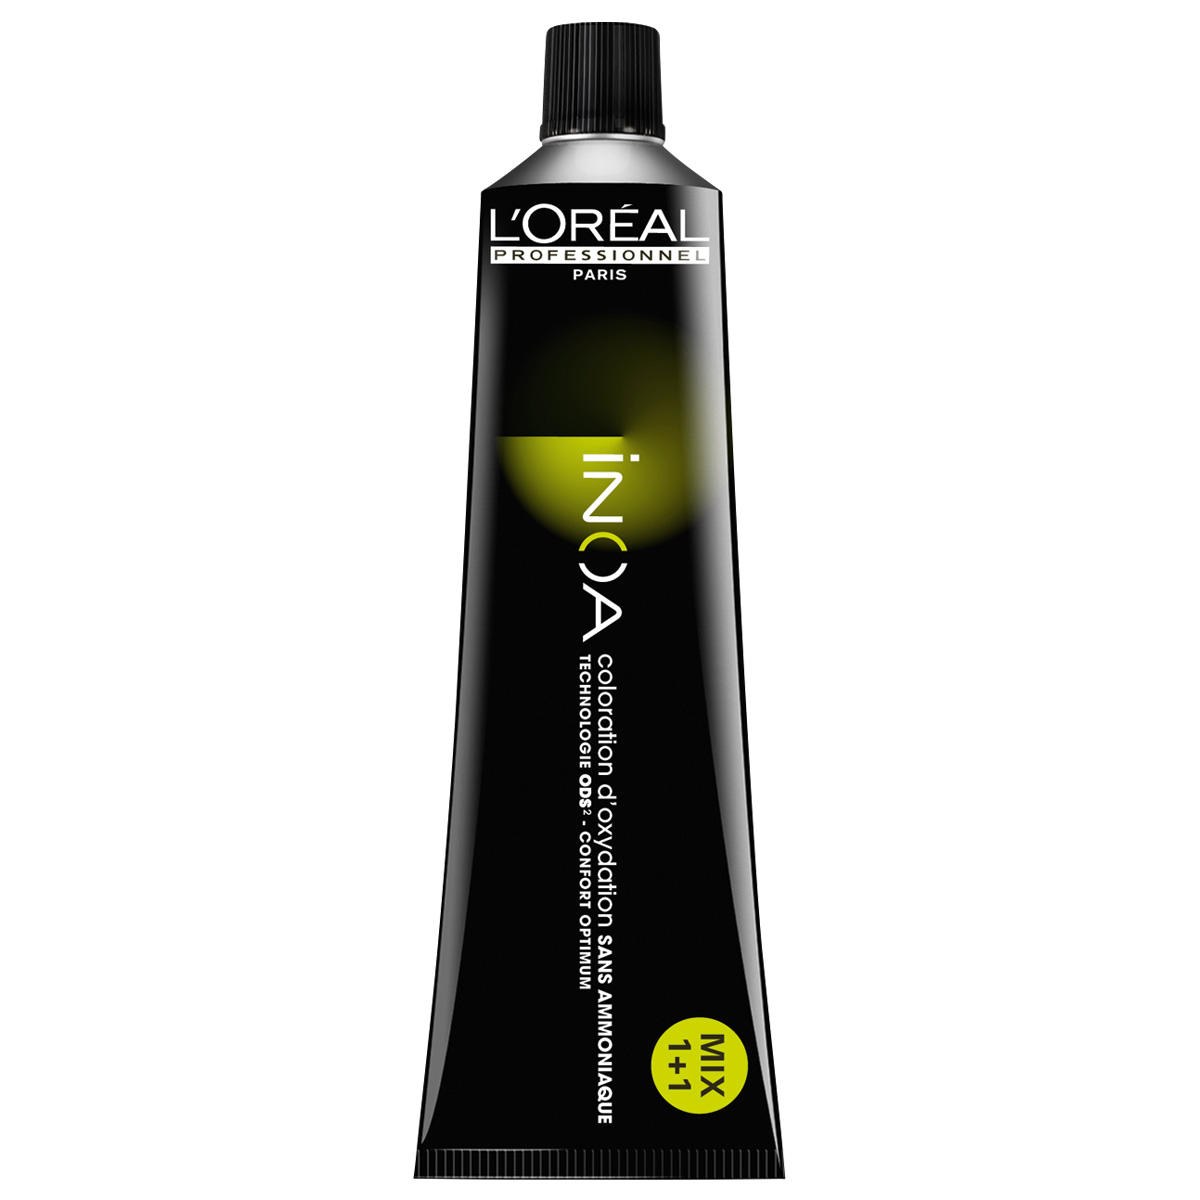 L'Oréal Professionnel Paris Coloration 4,0 brun moyen intense, Tube 60 ml - 1